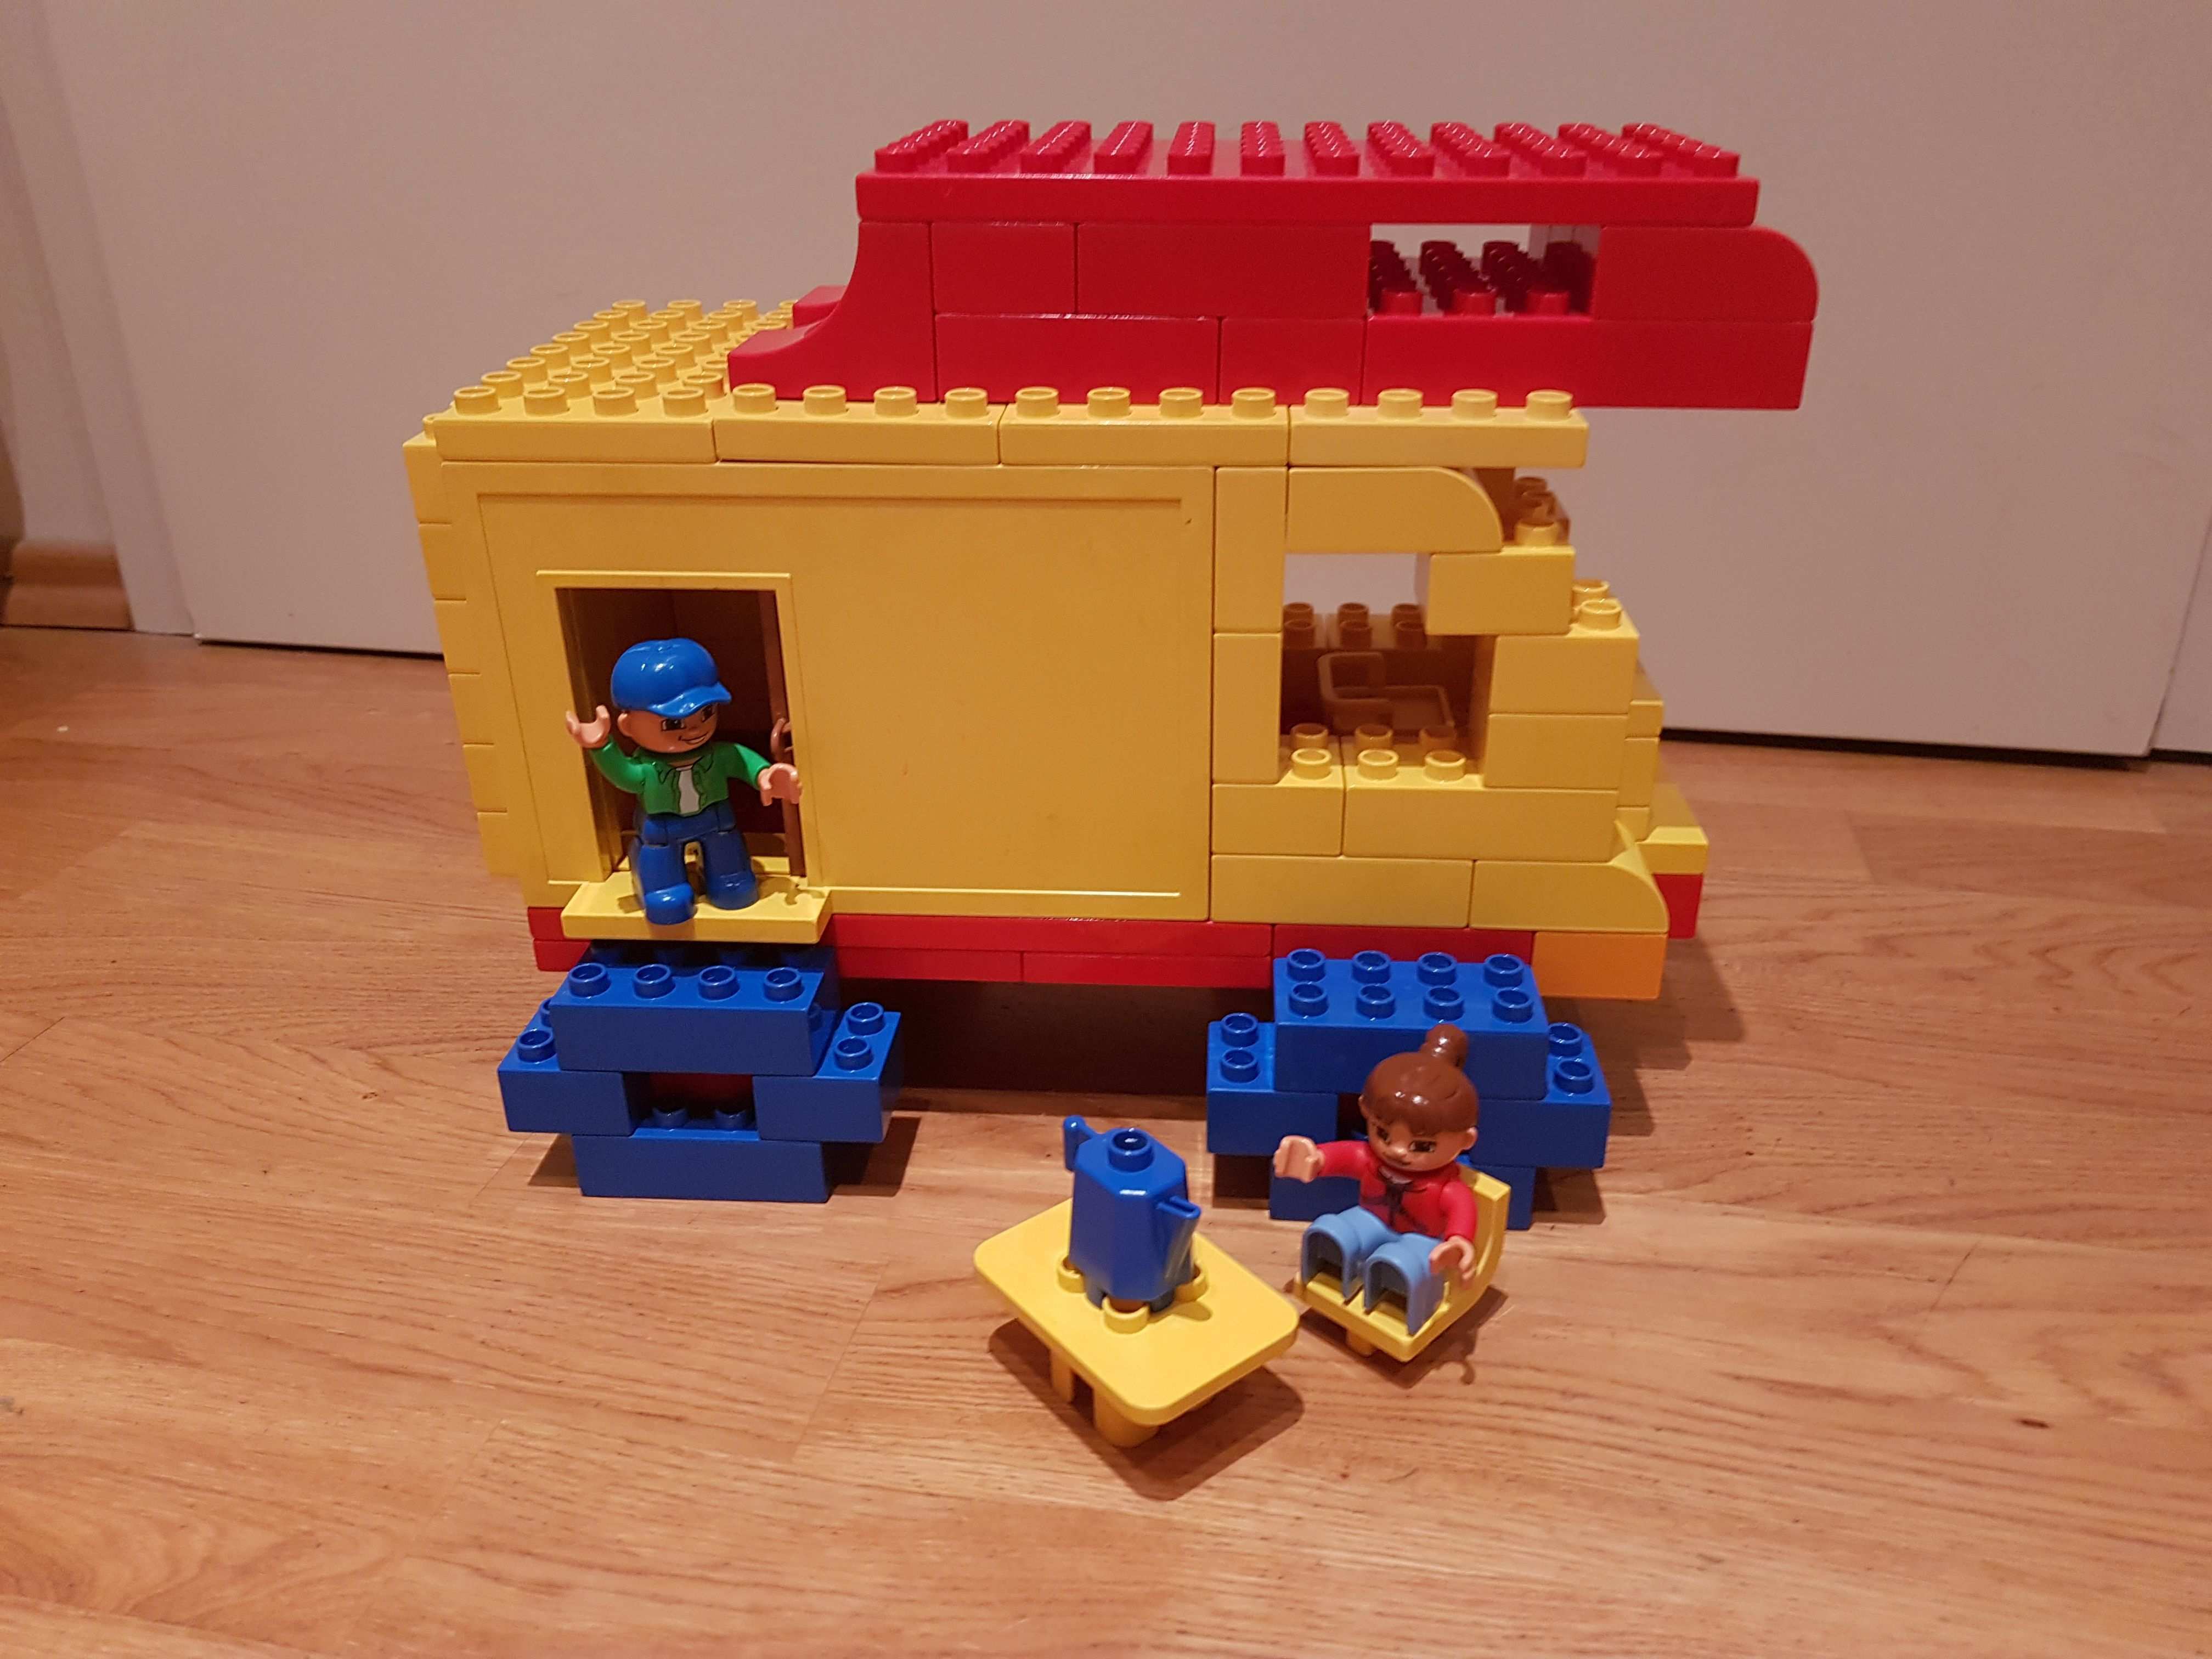 Hier Siehst Du Einen Wohnwagen Aus Lego Duplo Diese Und Weitere Bauideen Gibt Es Auf Brickaddict De Einem Blog Fur Lego Duplo Ins Lego Duplo Bauideen Lego